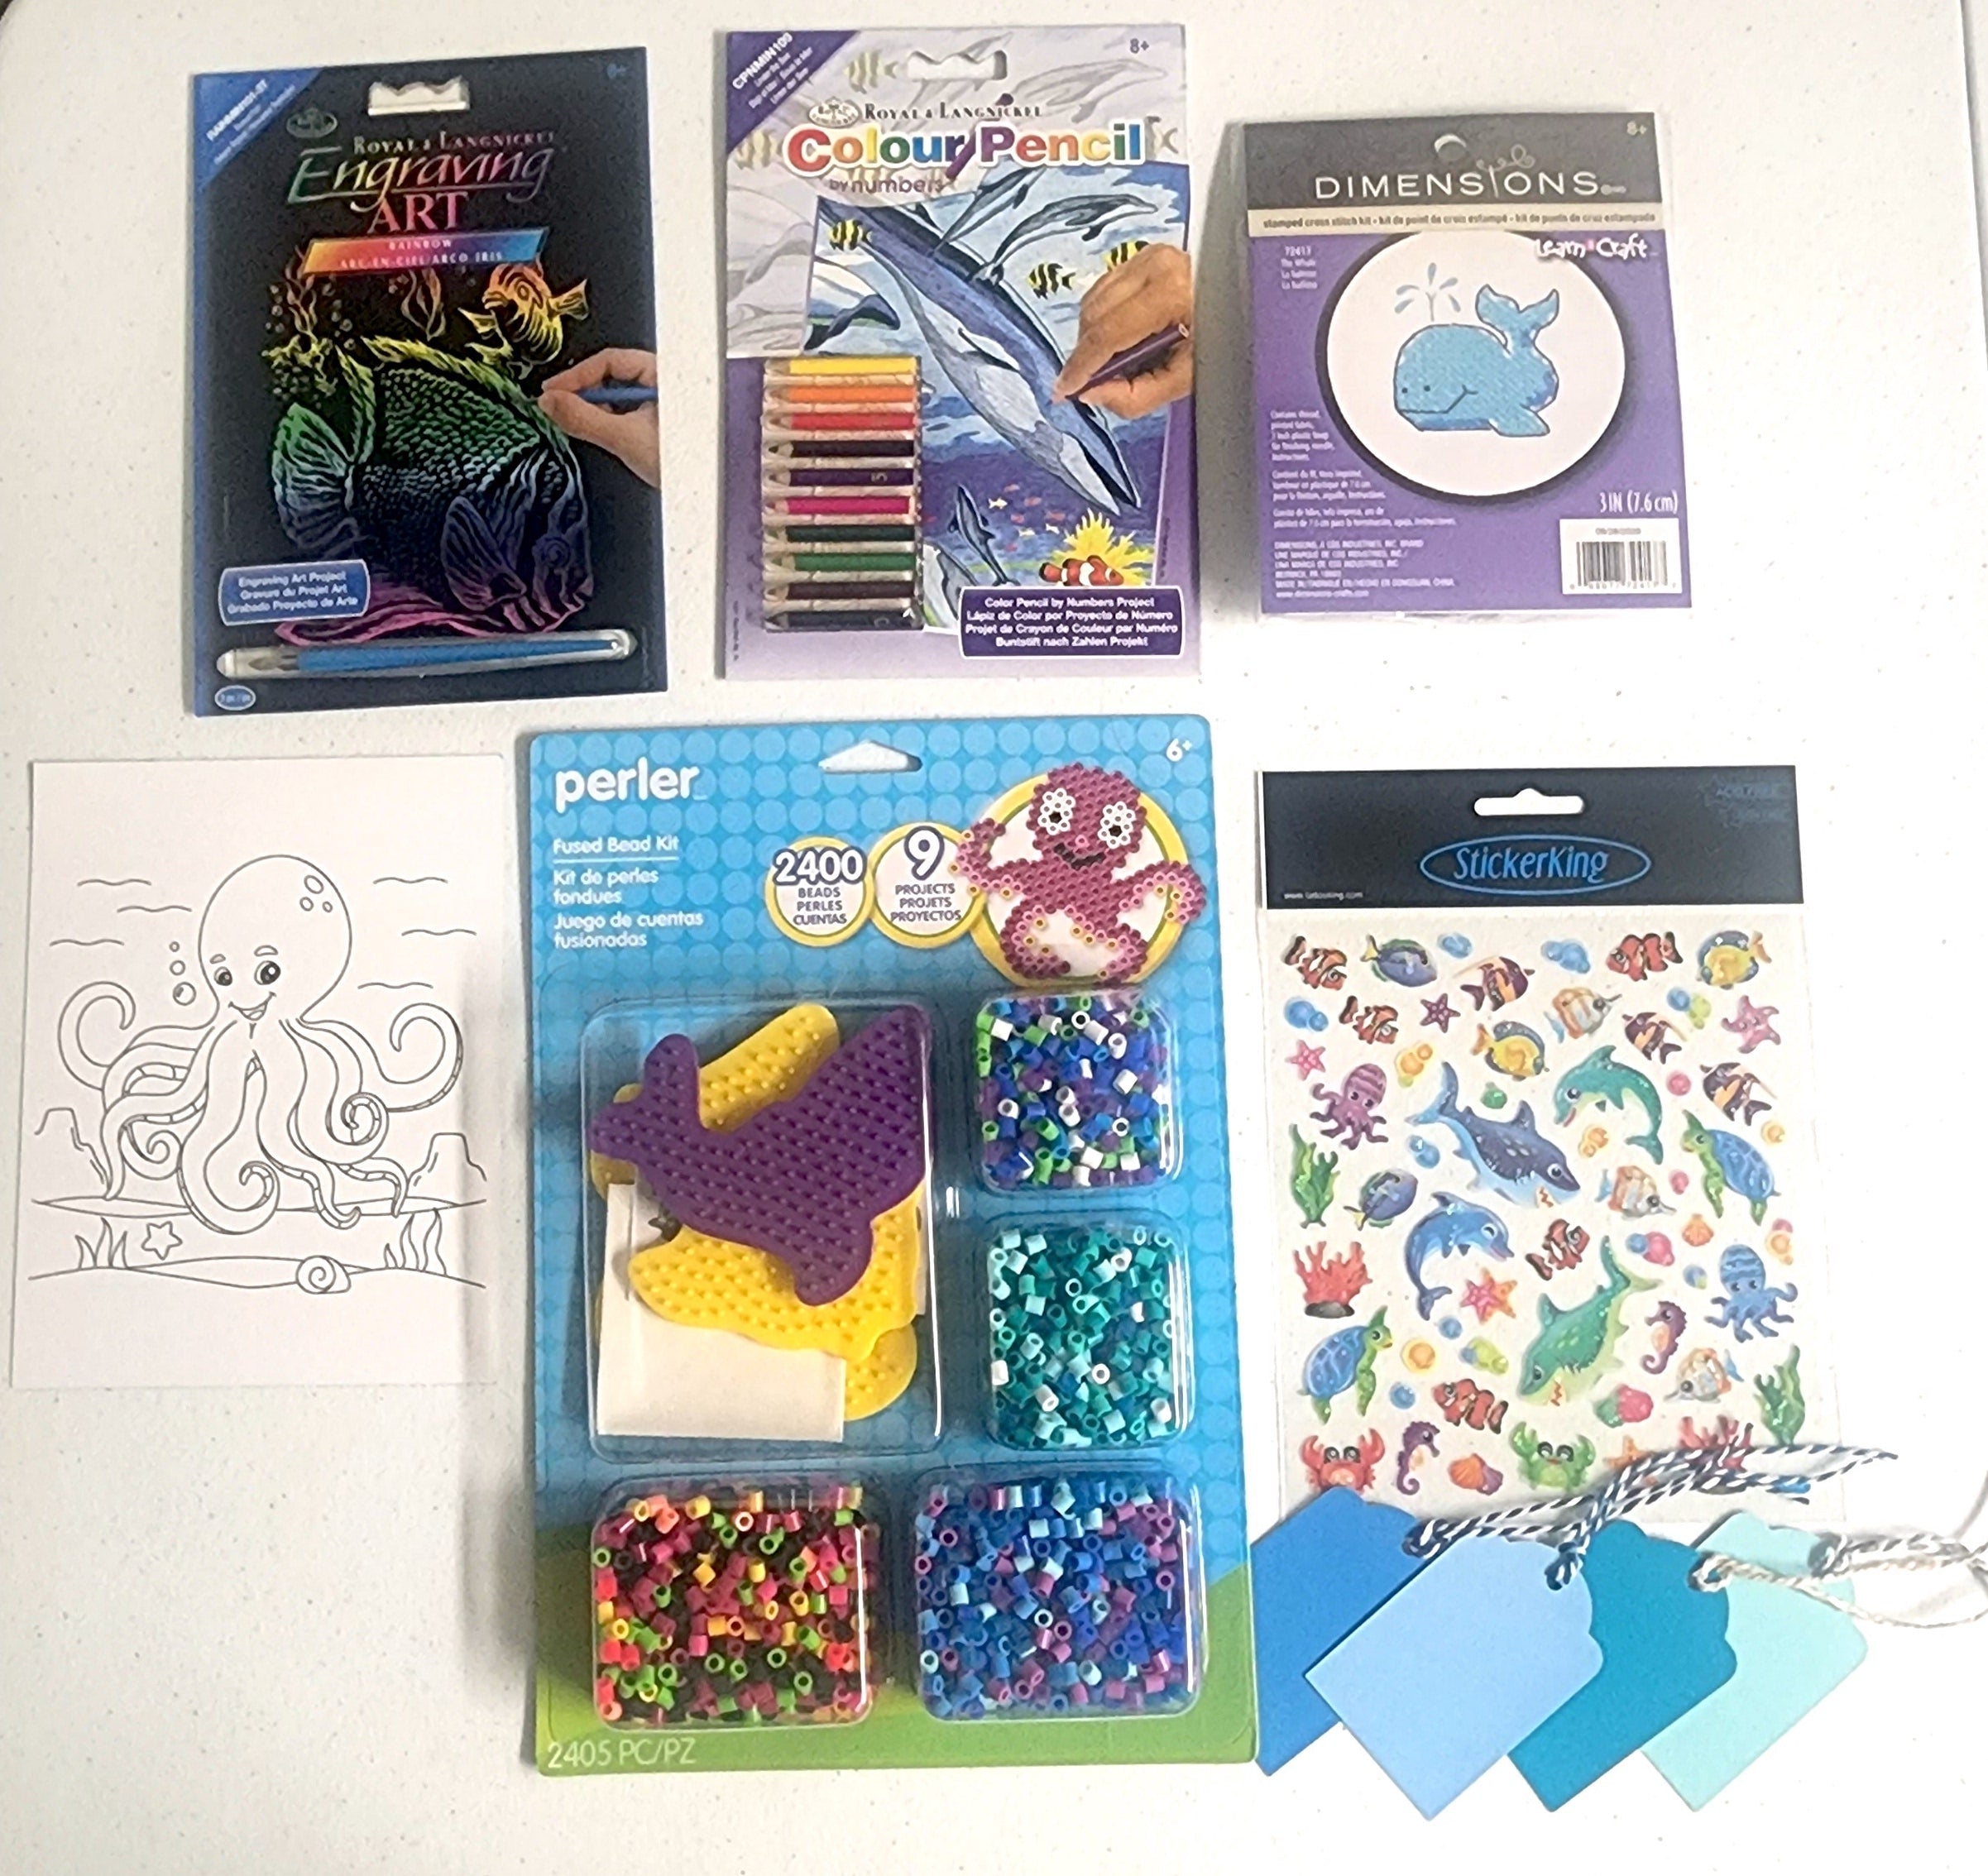 Craft 'n Stitch Ocean Animals Beach Summer Crafts Gift Box for Kids Ages 7-9